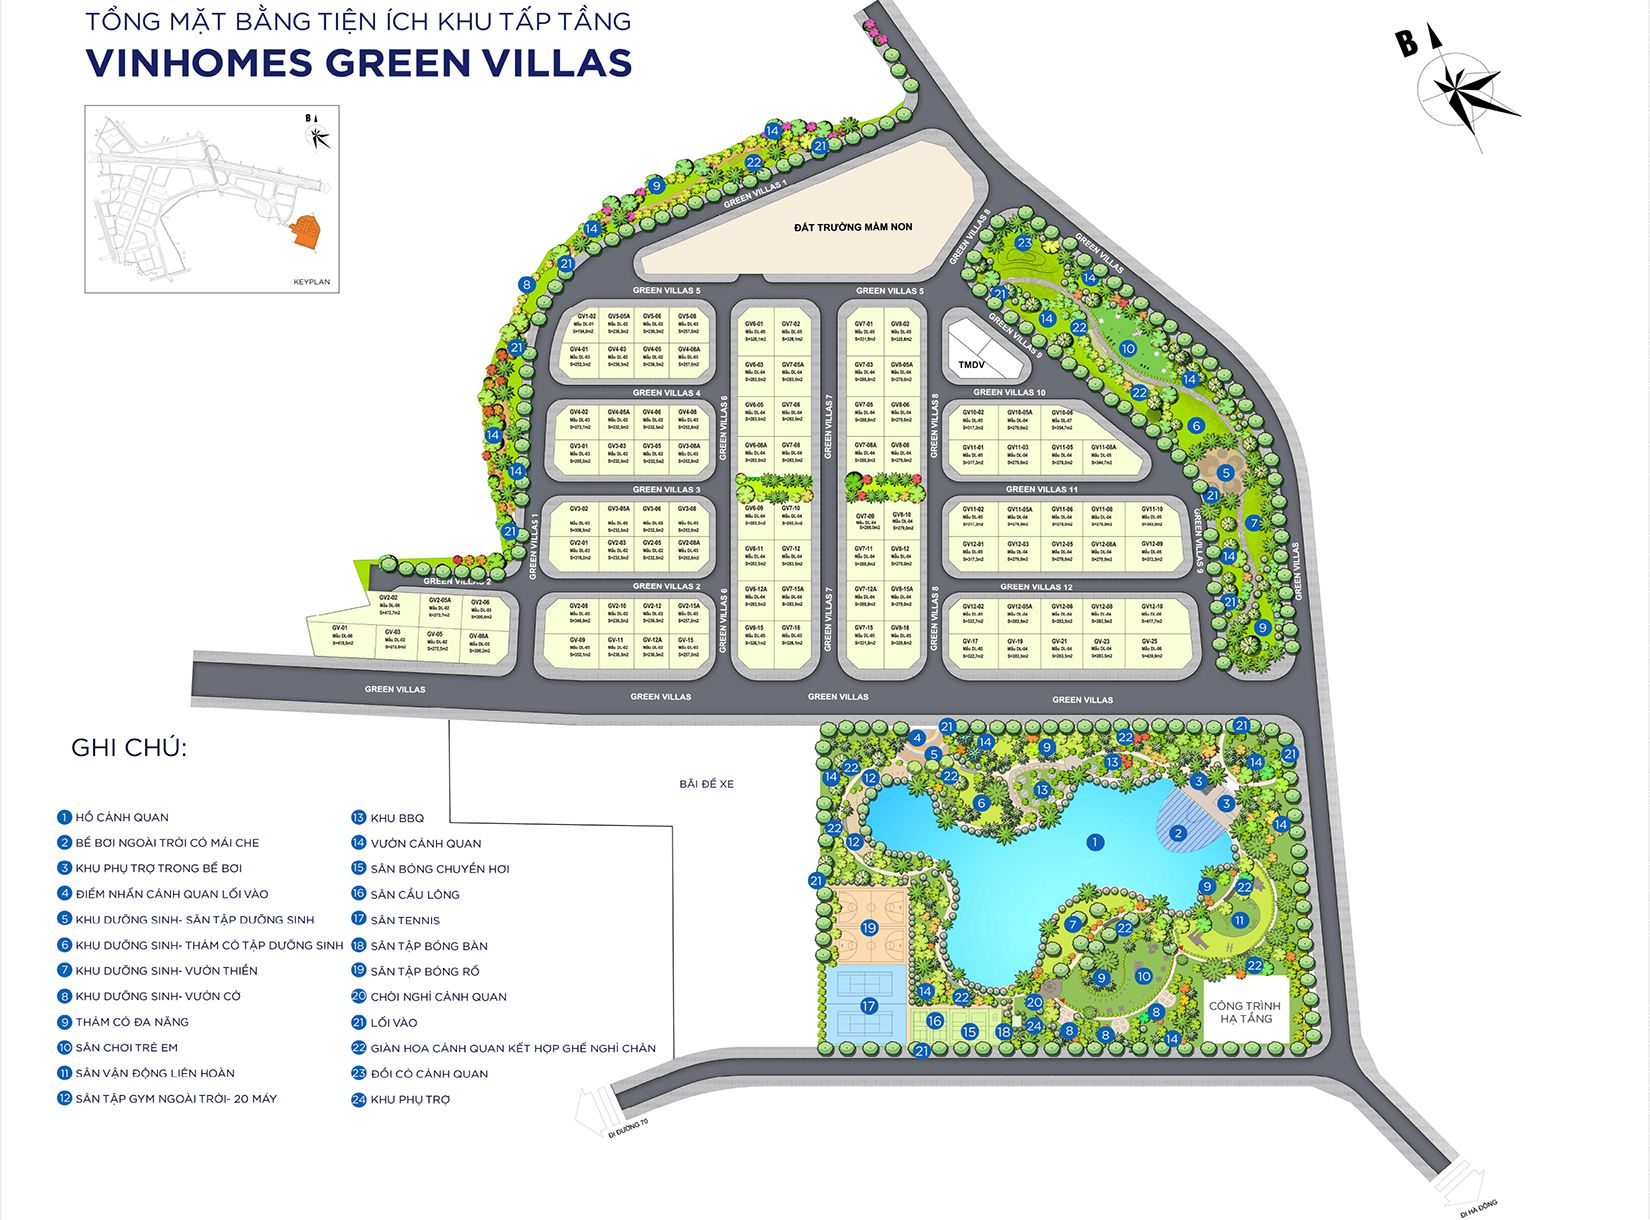 Vinhomes Green Villas với mặt bằng lên tới 13.7 ha